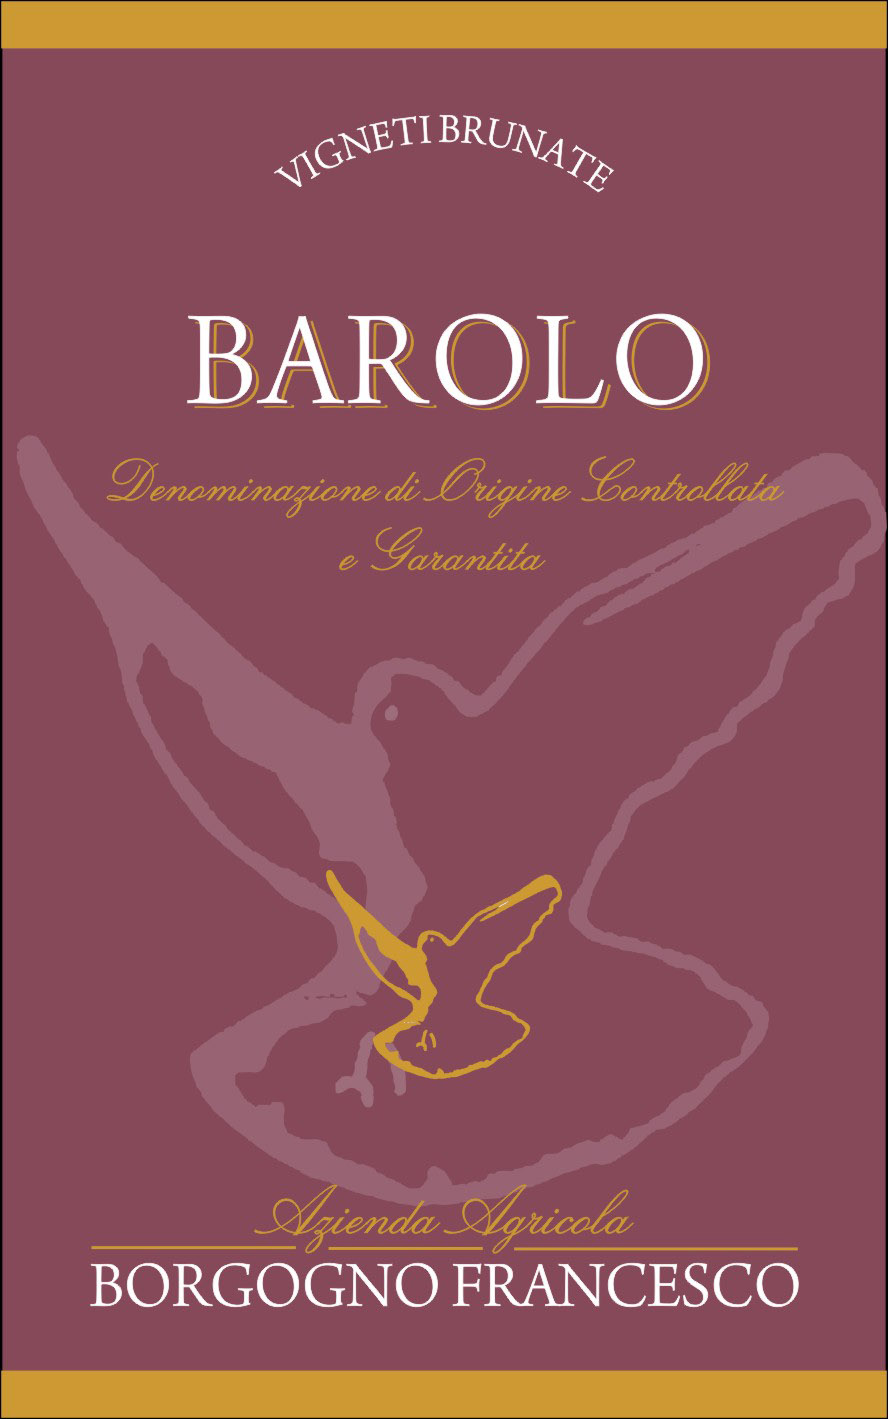 Barolo DOCG Brunate - F. Borgogno (etichetta)